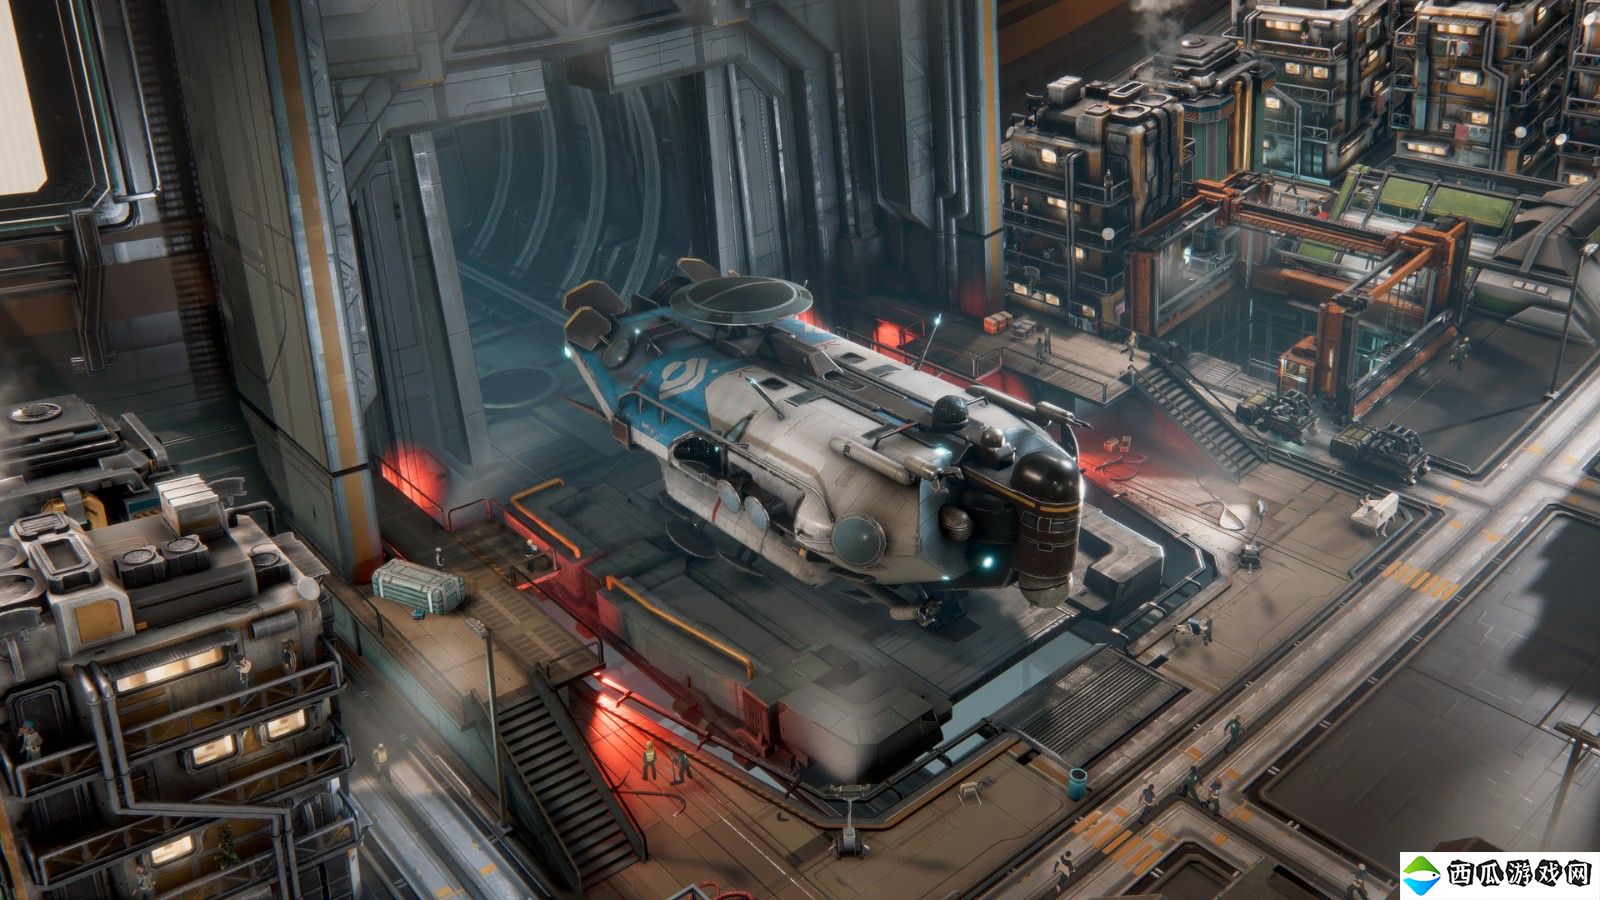 太空城市建造游戏《伊克西翁》将登陆PS5和Xbox Series